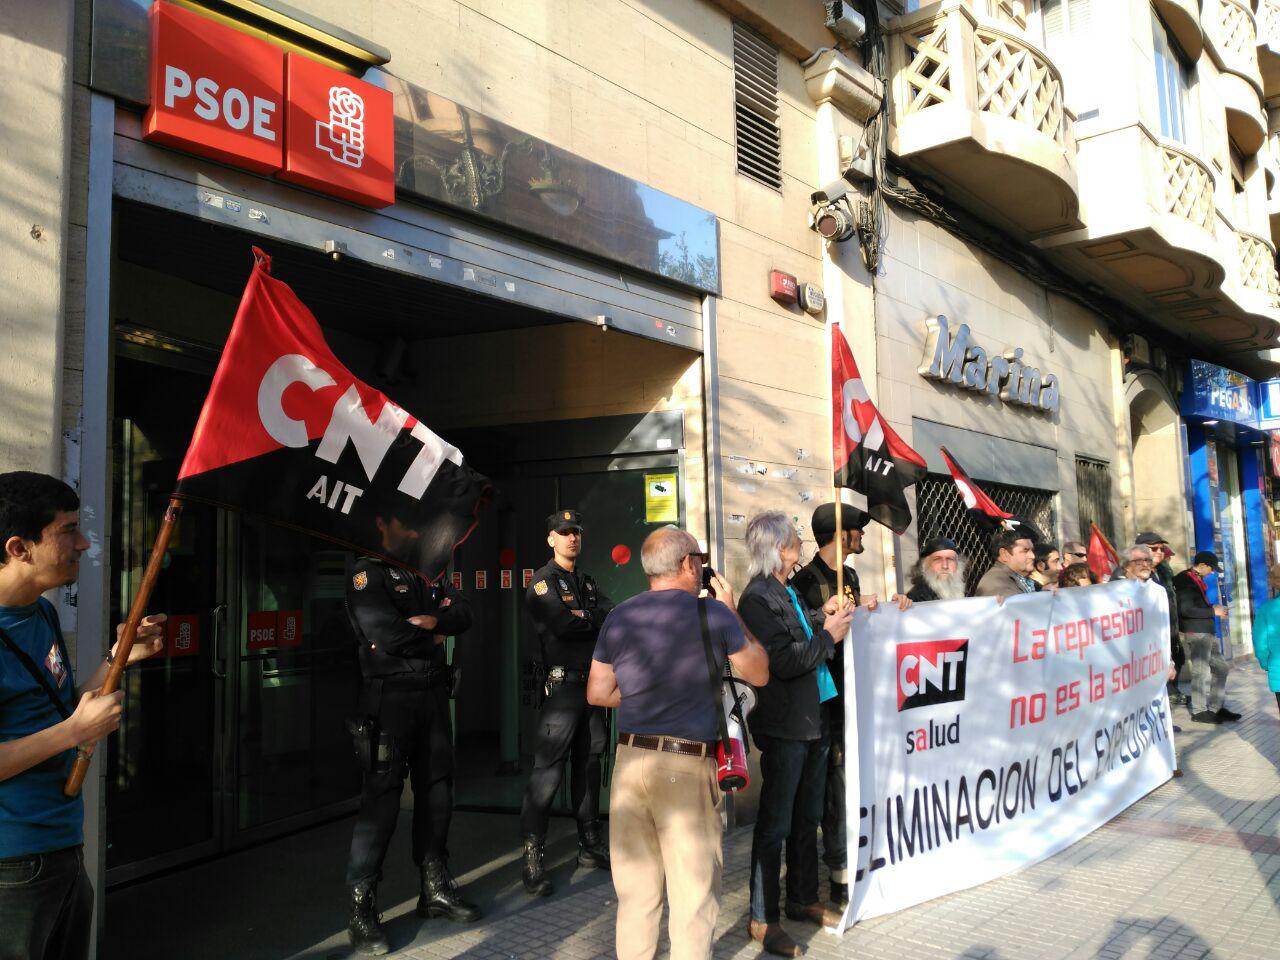 [CNT-SALUD] Concentración miércoles 22 de marzo a las 19 horas frente a la sede del PSOE en Zaragoza